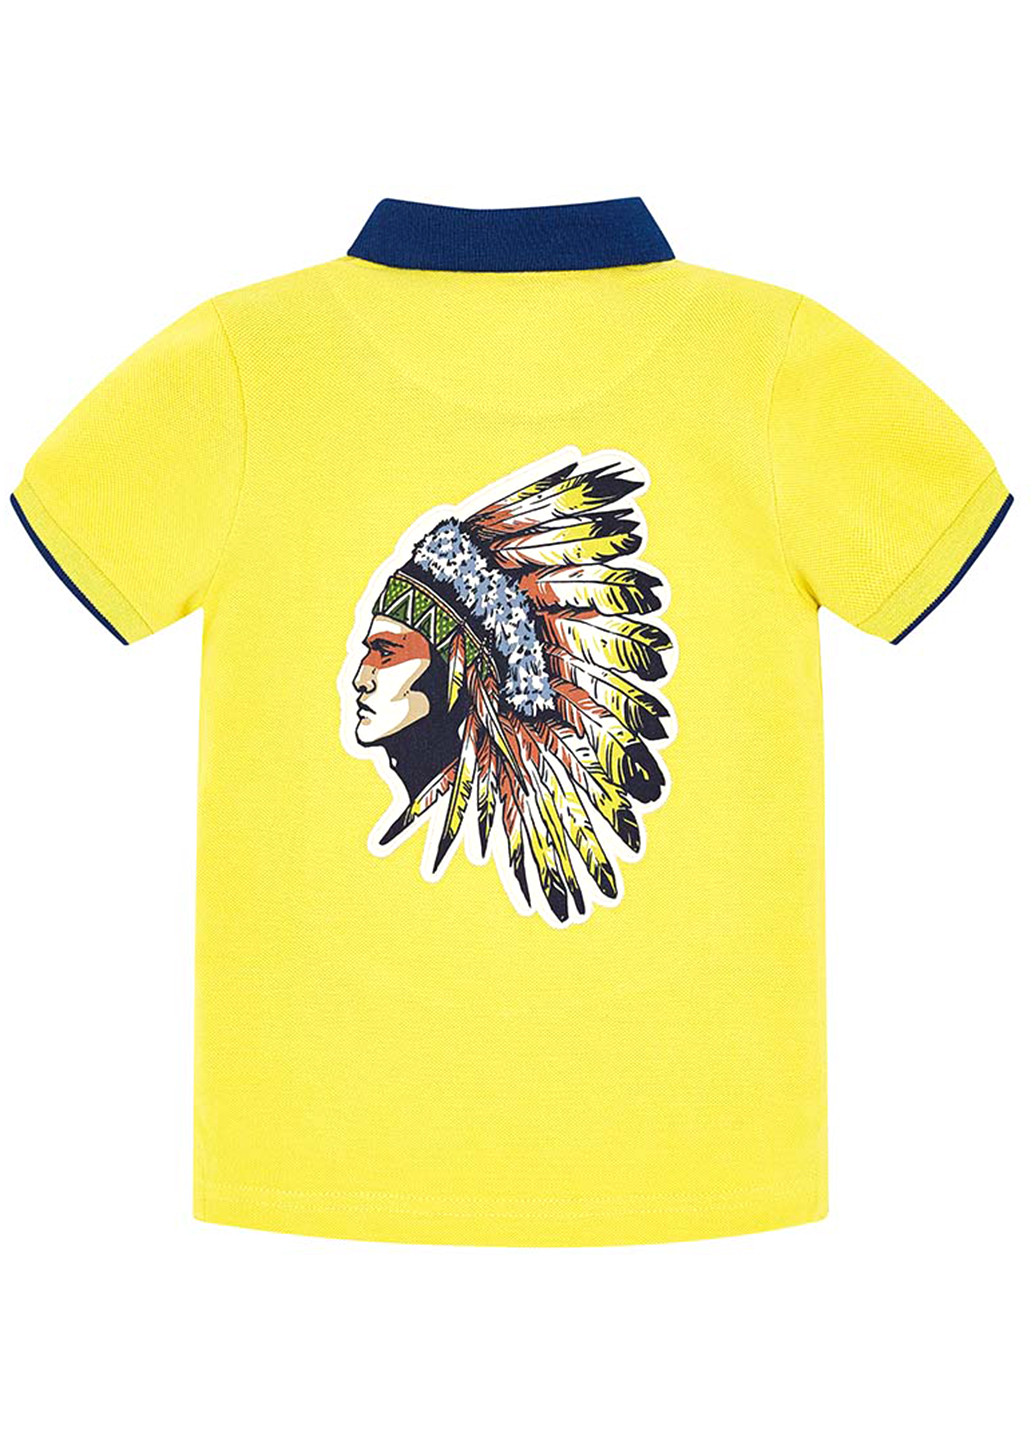 Желтая детская футболка-поло для мальчика Mayoral с рисунком